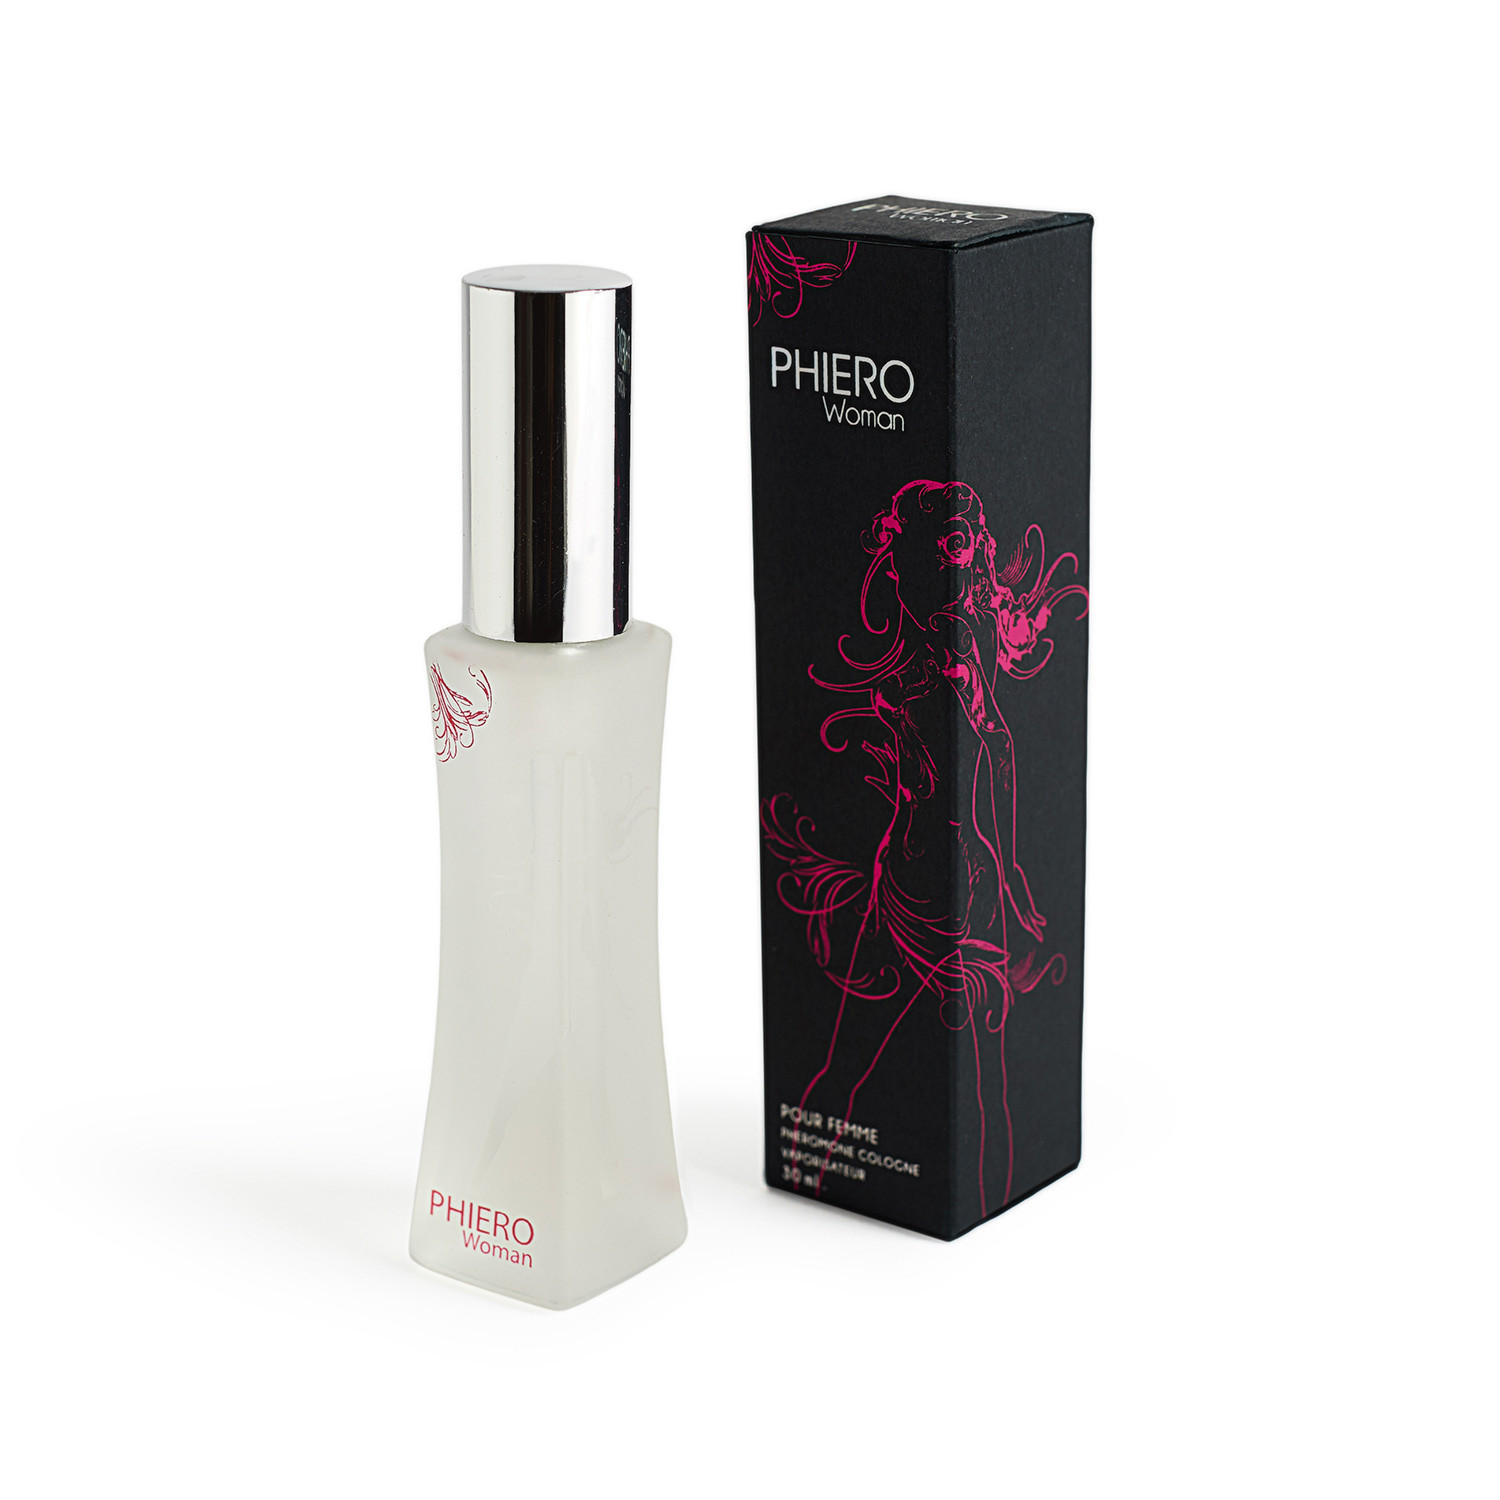 Phiero Woman, parfum met feromonen voor vrouwen